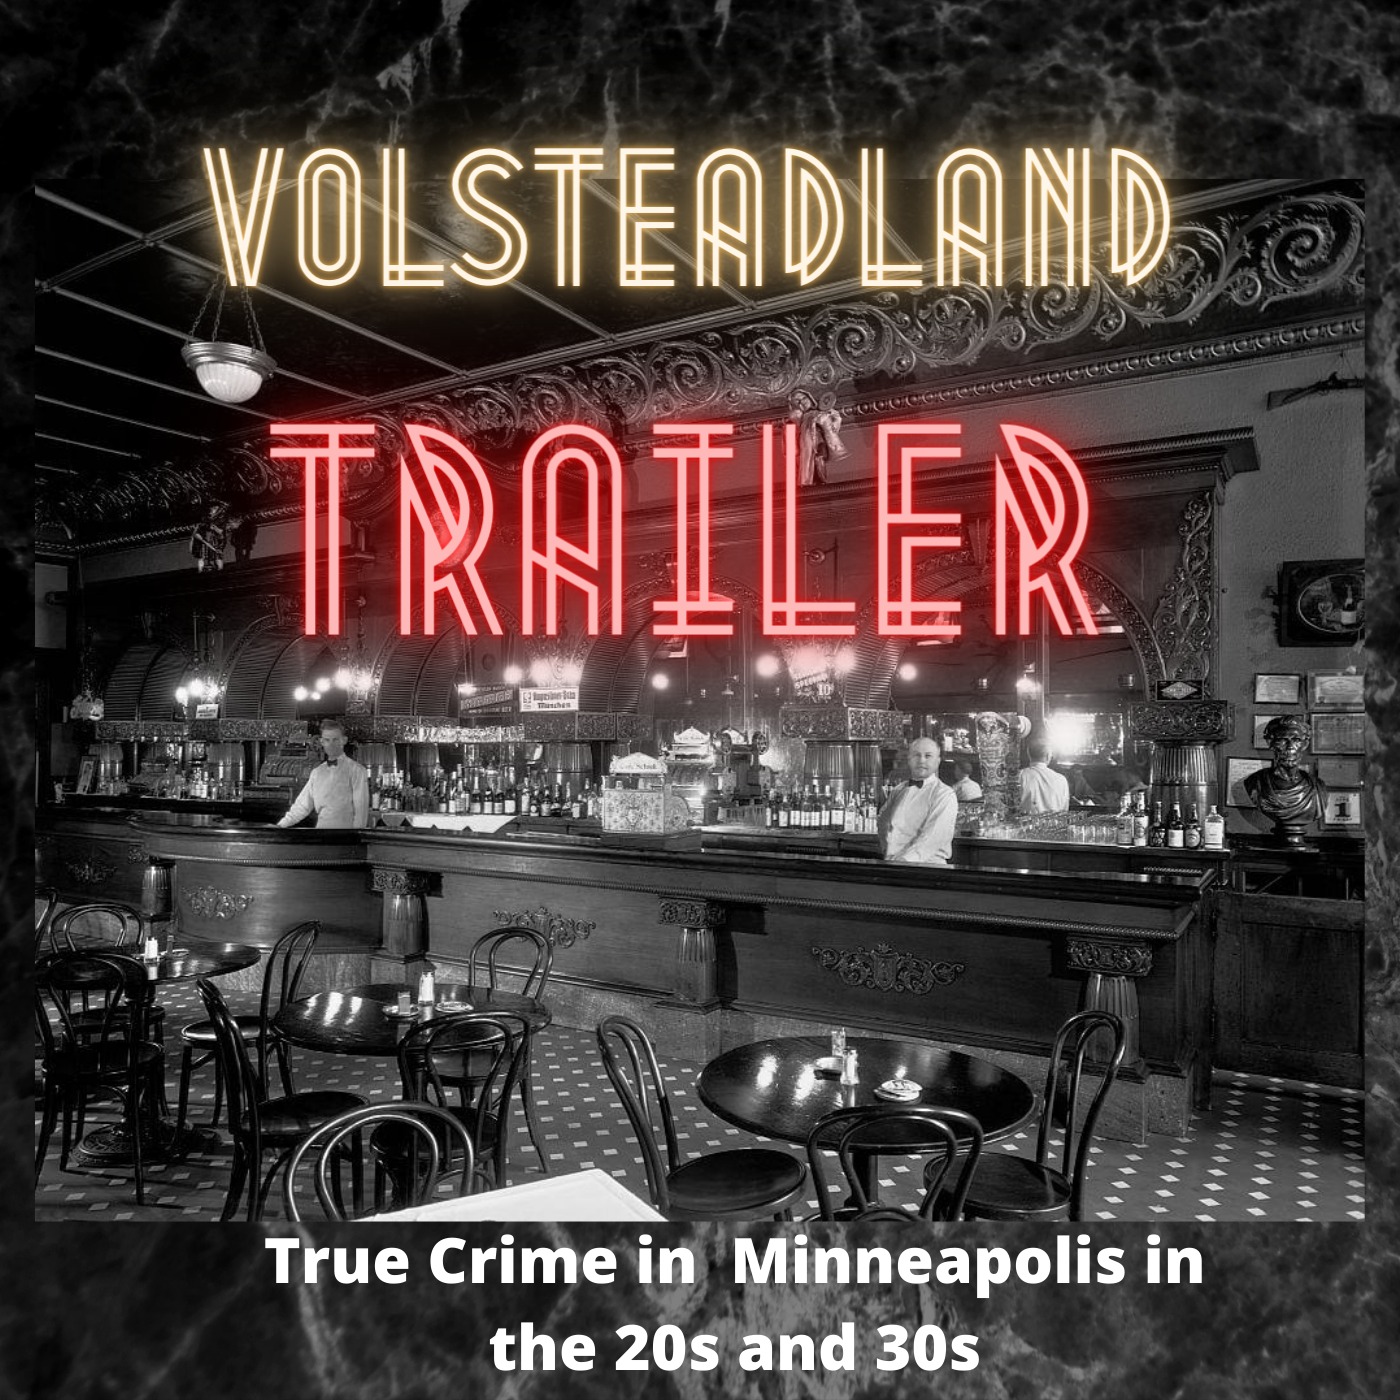 Volsteadland: Teaser trailer Image